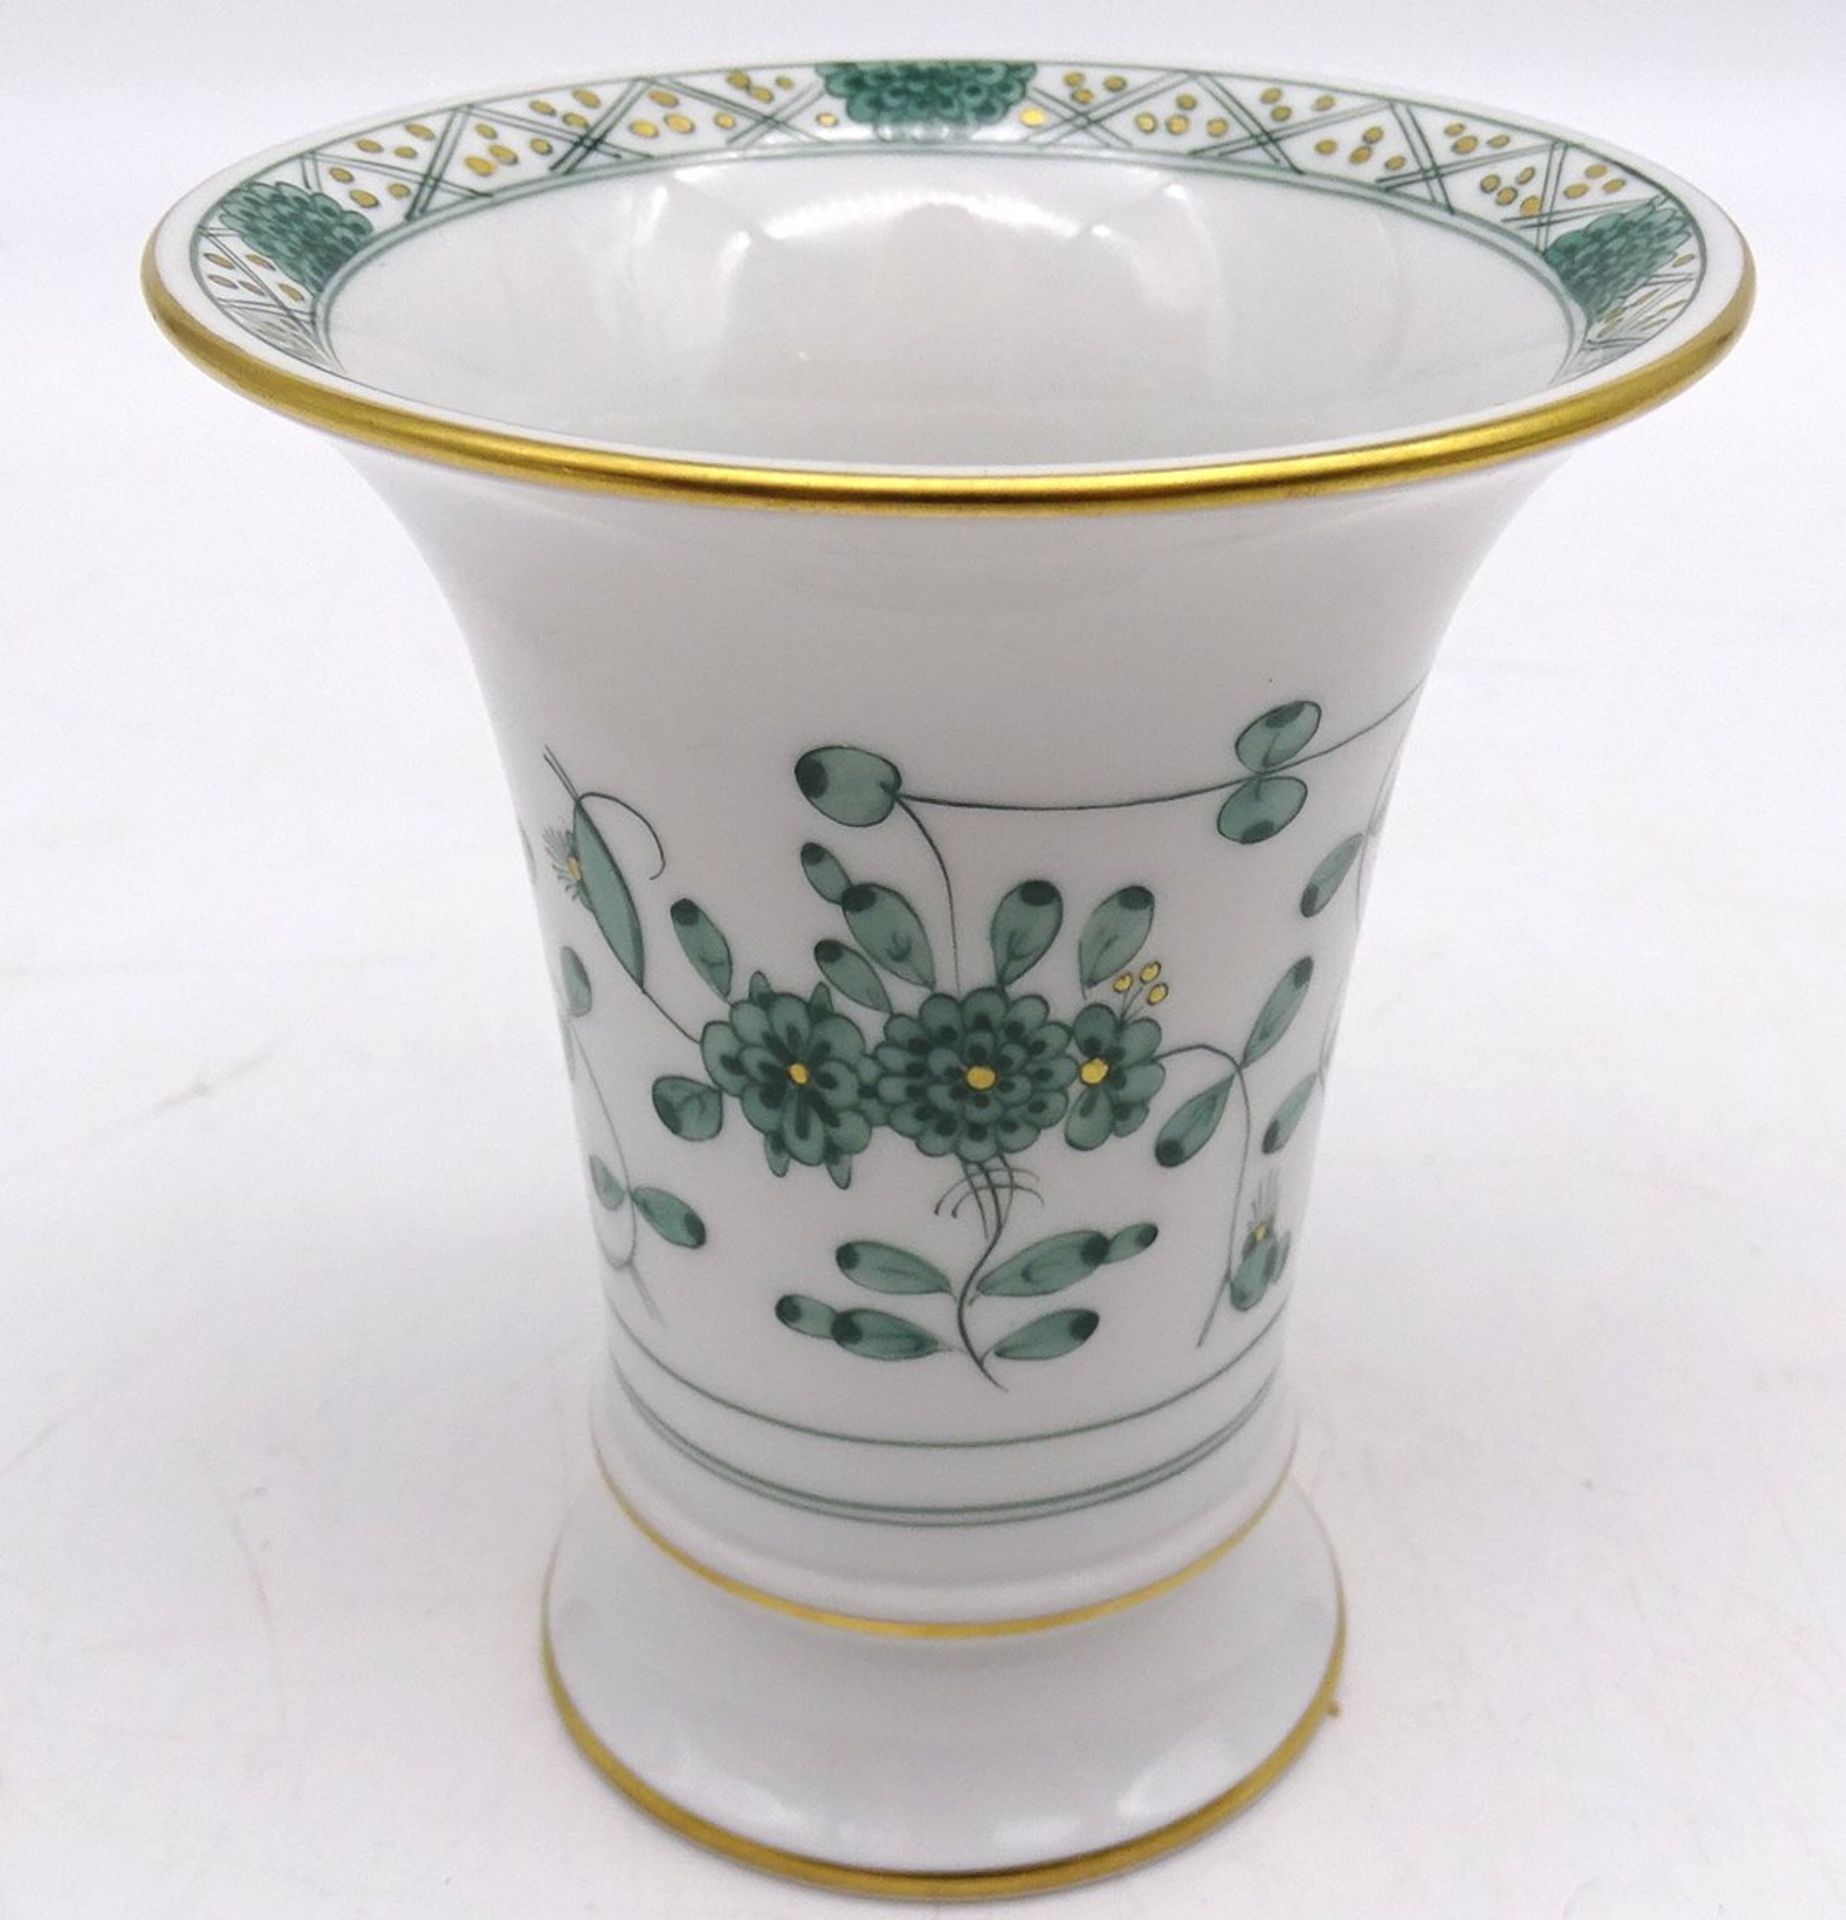 kl. Vase "Meissen", Indisch grün, H. 9,5cm, D. 8,5cm - Image 3 of 4